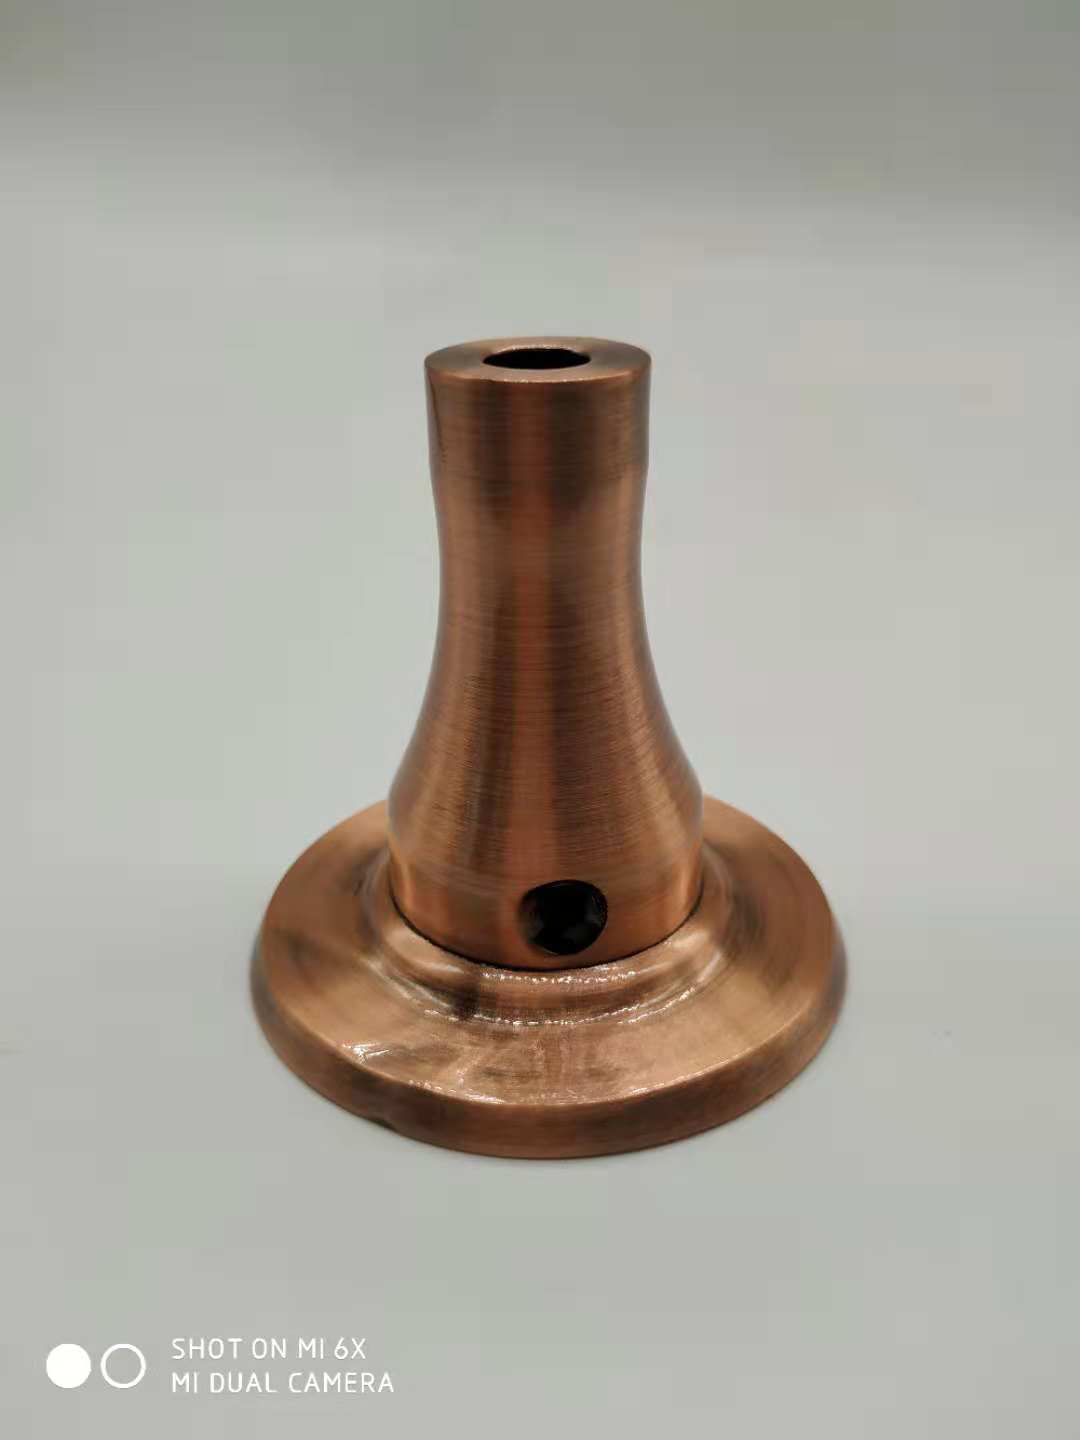 深圳居宝莱电镀厂专业表面处理铜件做红古铜拉丝处理